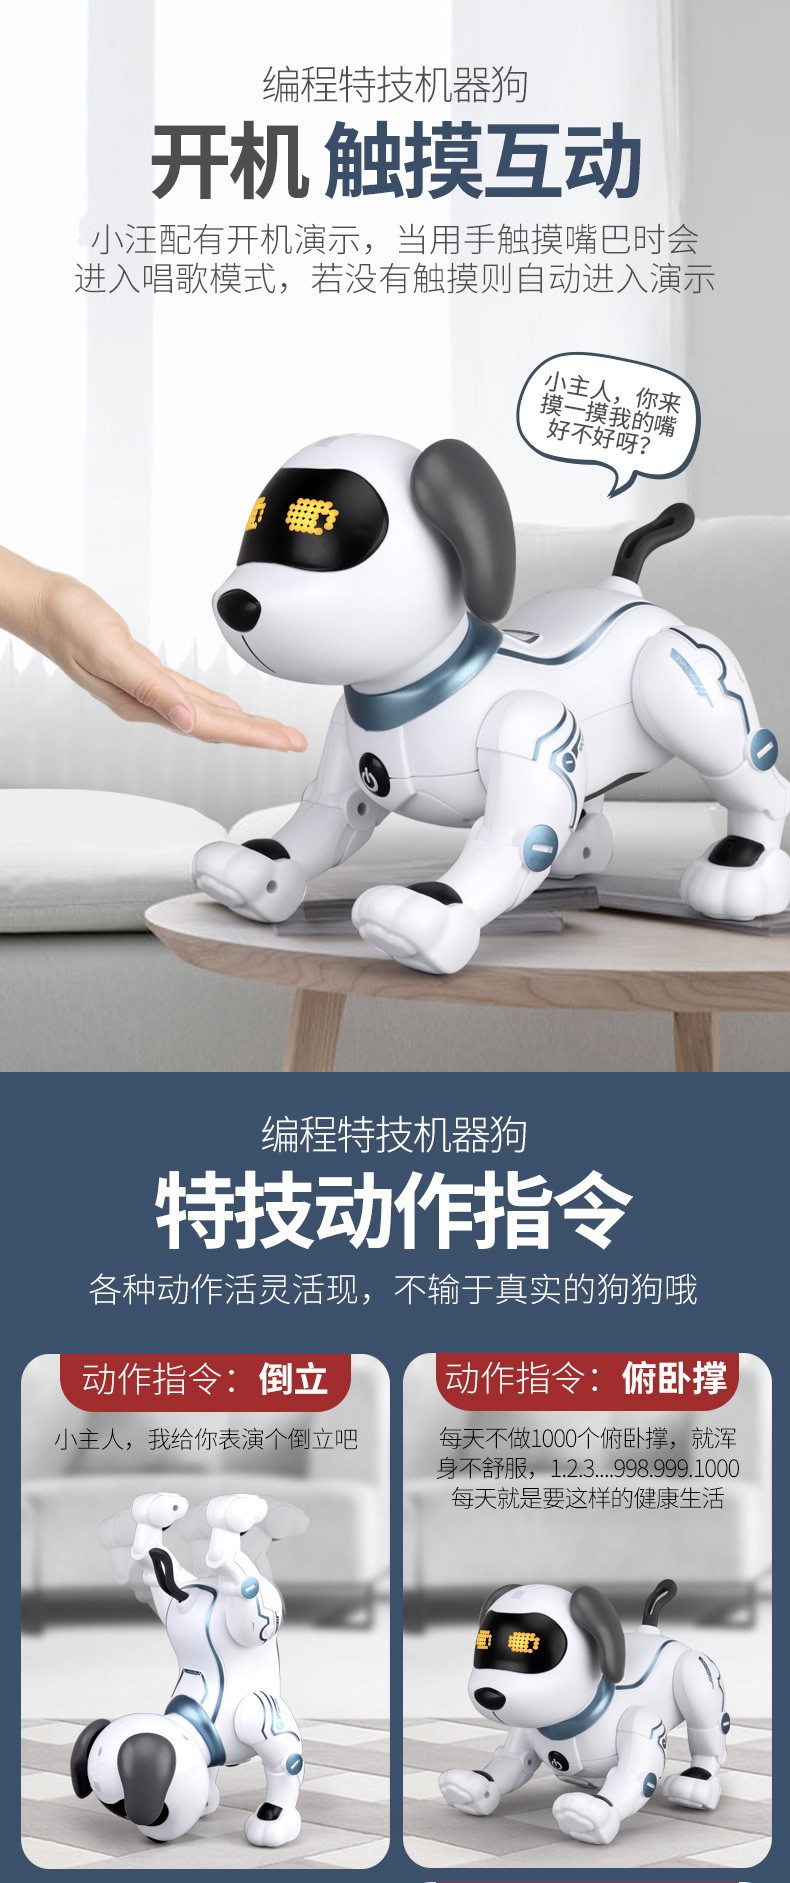 凌速(LNSU)毛绒公仔智能机器狗智能遥控机器人玩具编程玩具特技狗男孩 